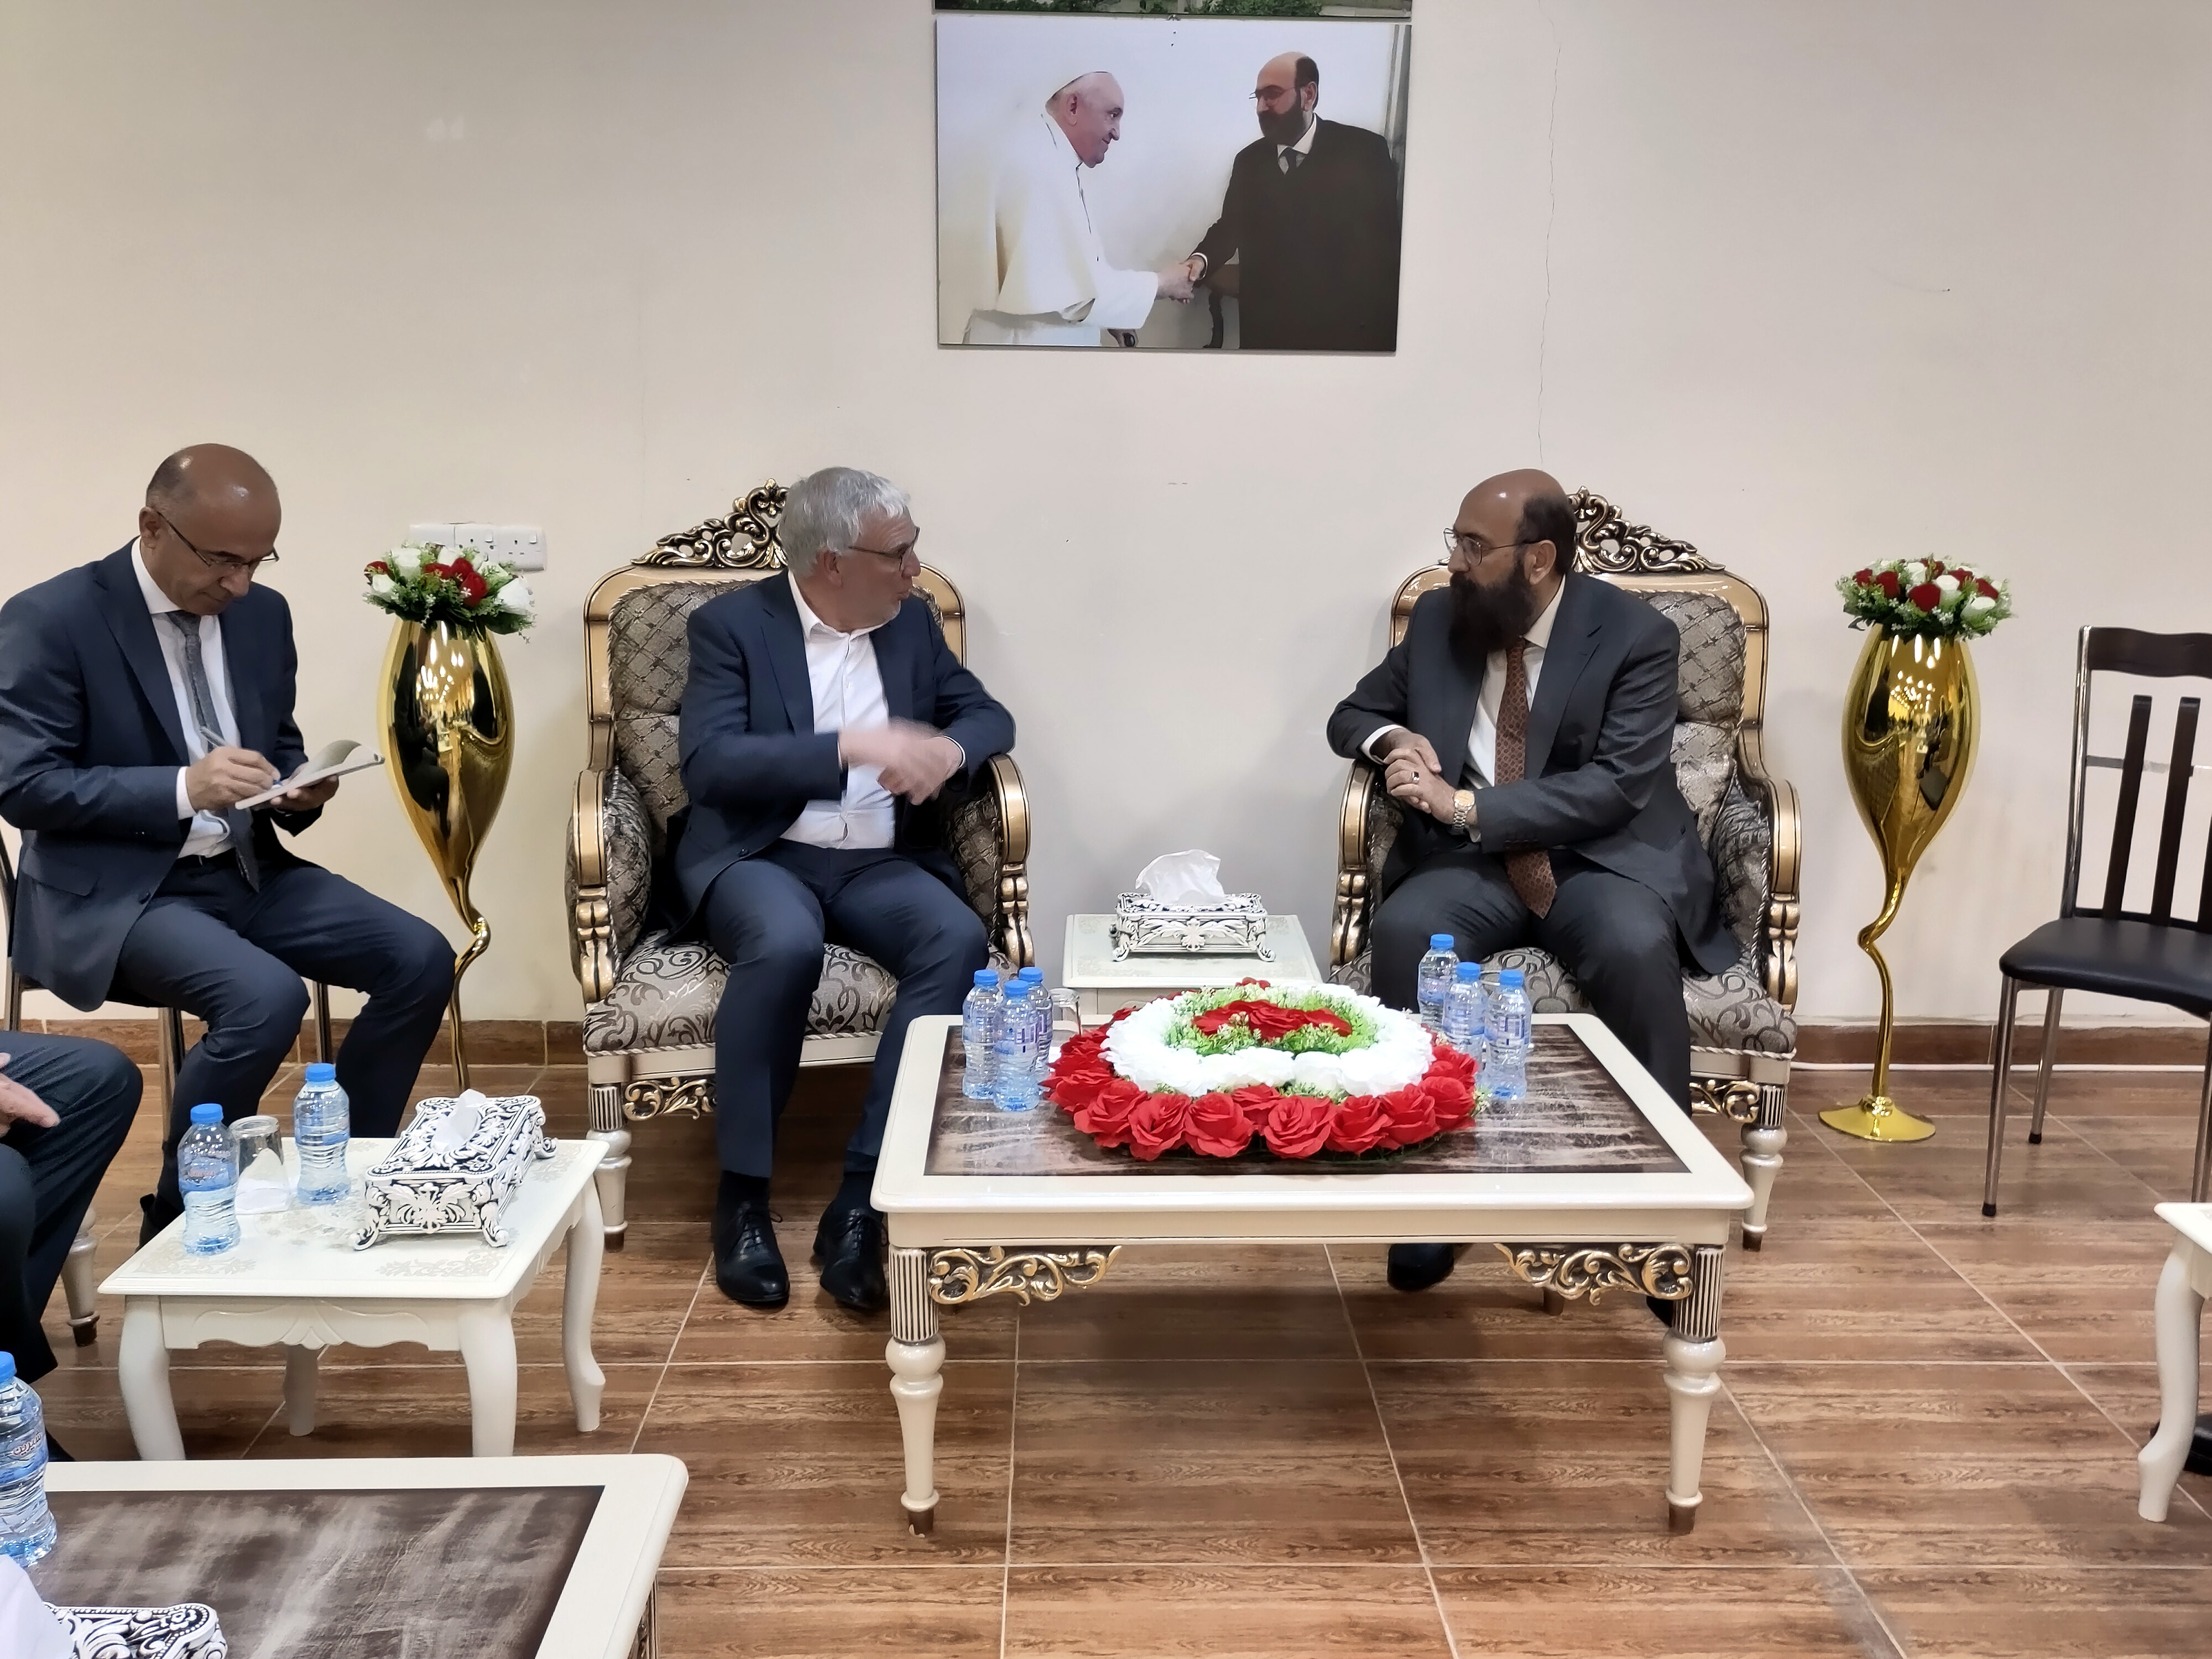 Staatsekretär Flasbarth im Gespräch mit dem jesidischen Prinzen Mir Tahsin Beg, insbesondere auch zum Schicksal vom IS verschleppter Jesidinnen